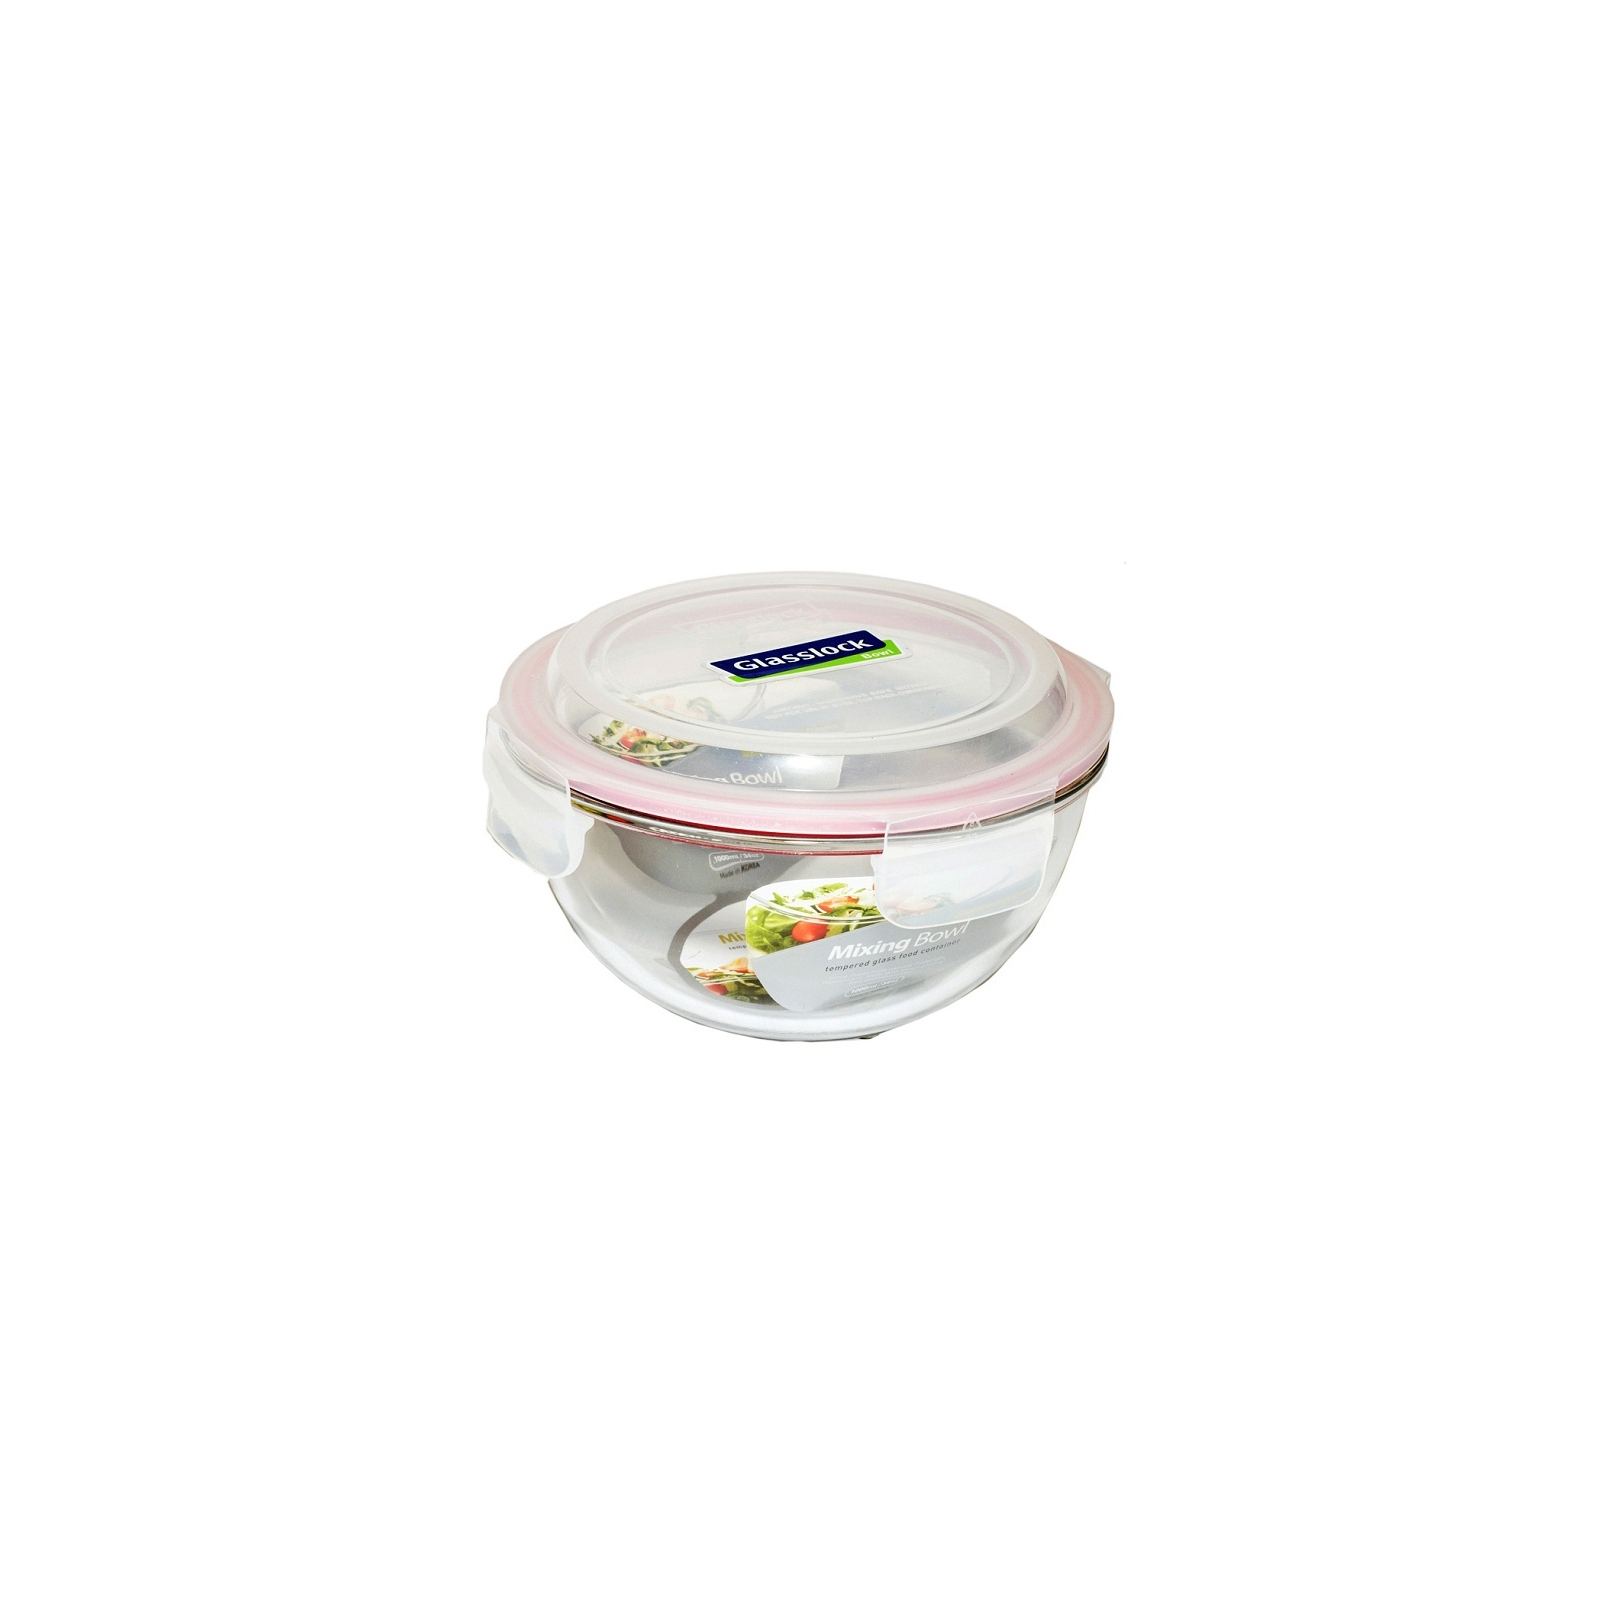 Пищевой контейнер Glasslock кругл. 2,0 л (MBCB-200)